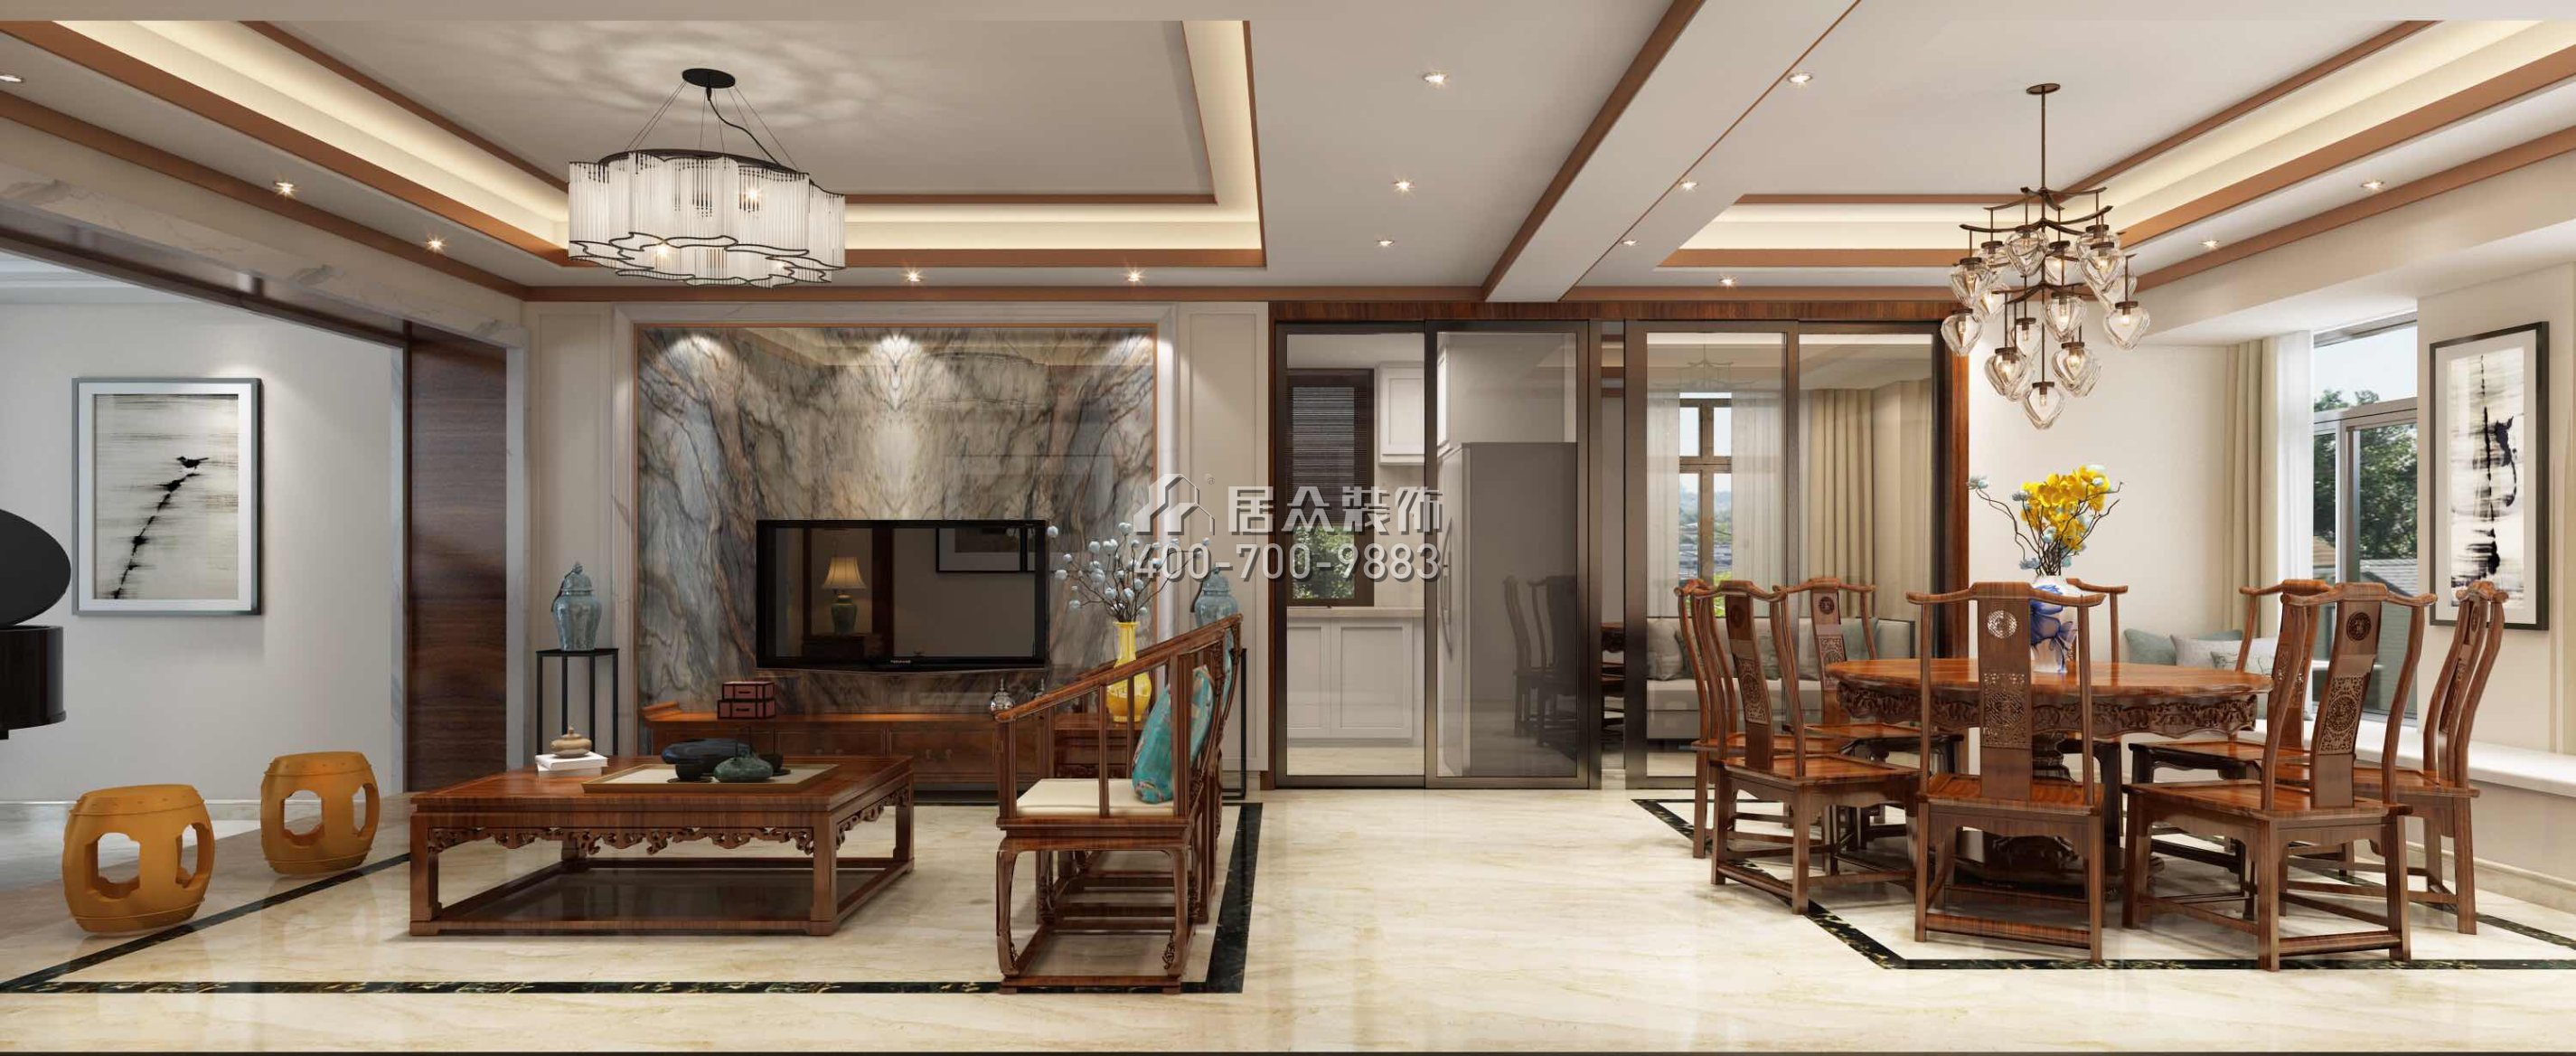 天骄华庭140平方米中式风格平层户型客餐厅一体装修效果图